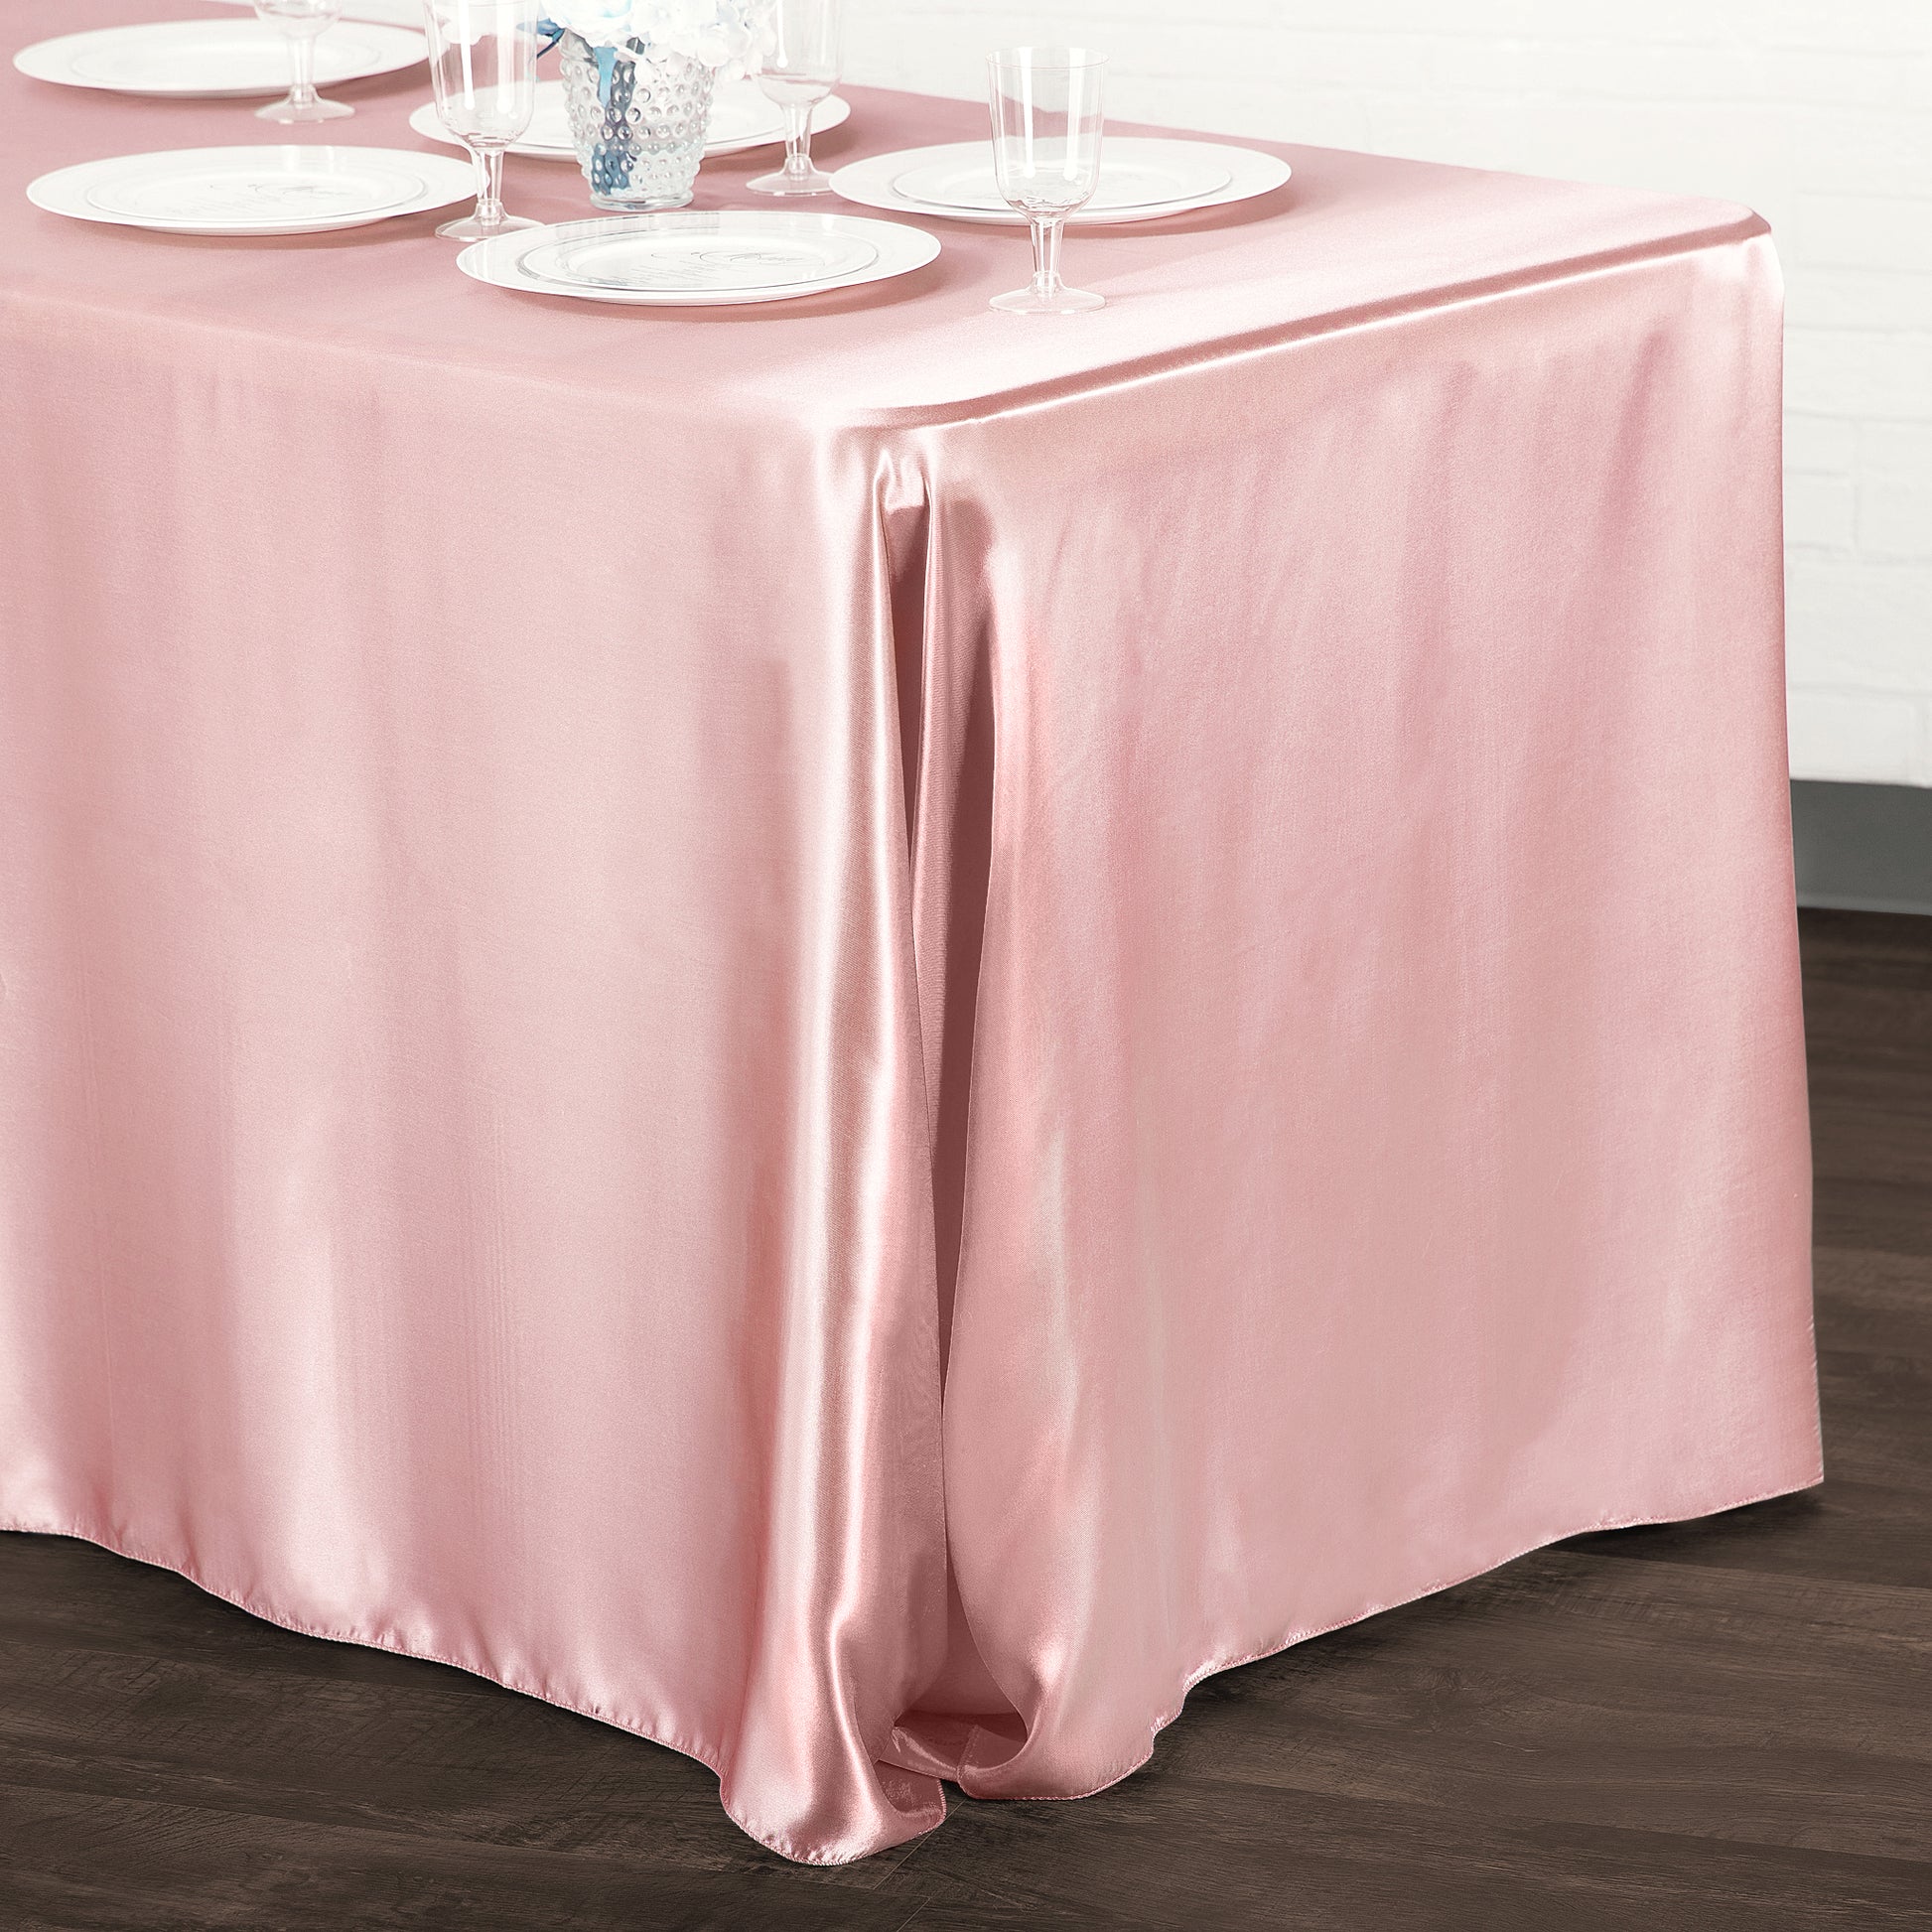 Satin Rectangular 90"x132" Tablecloth - Dusty Rose/Mauve